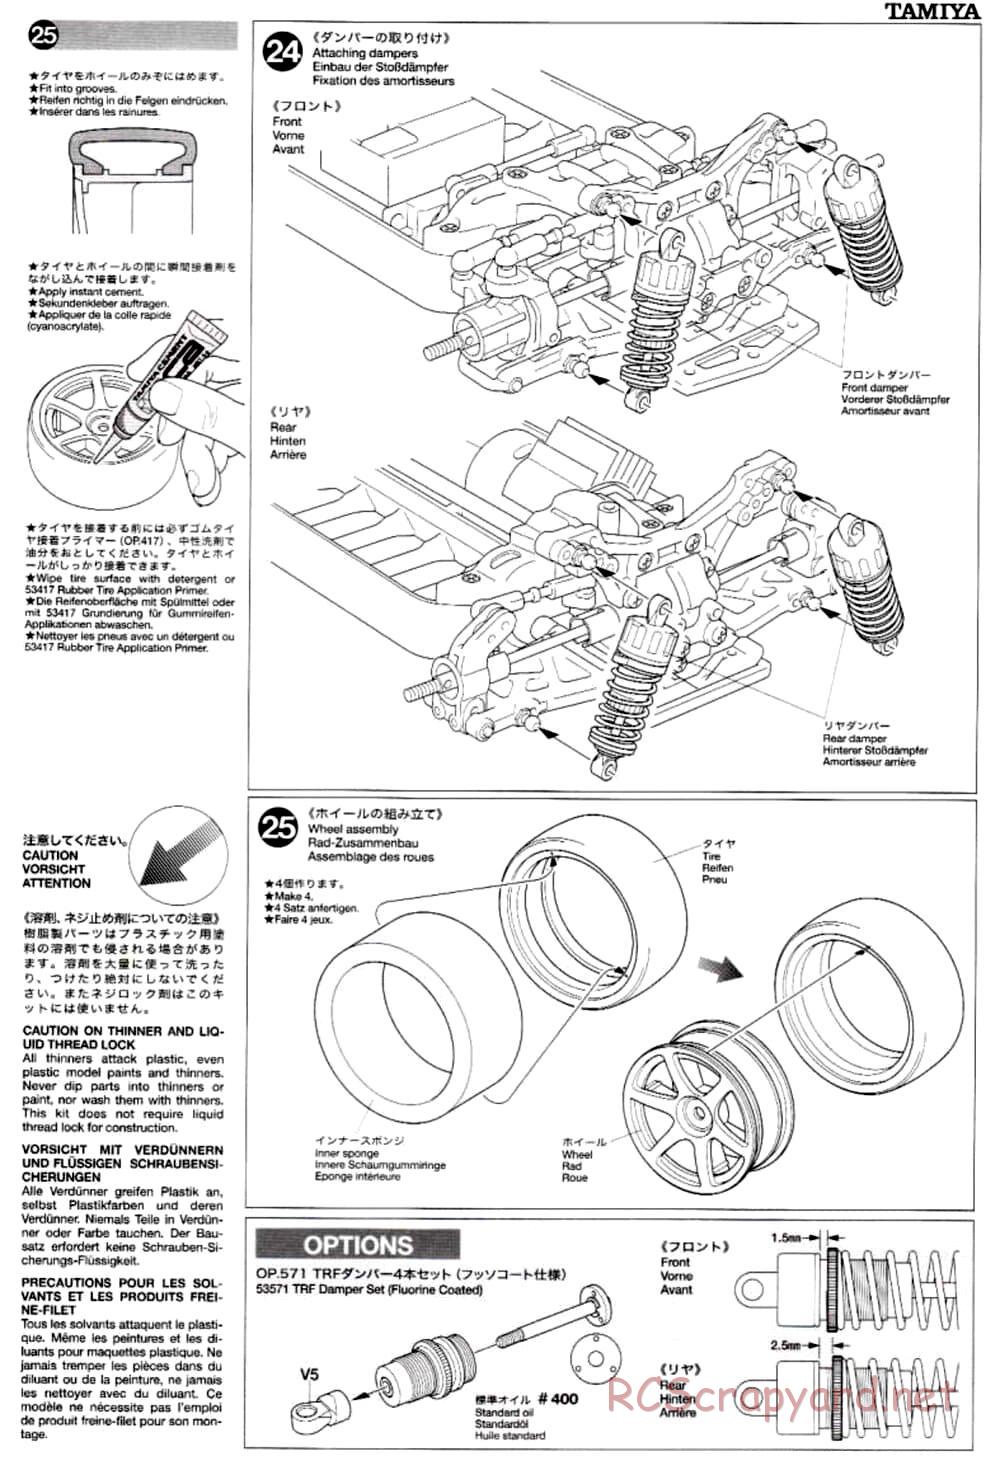 Tamiya - TB-02 Chassis - Manual - Page 15